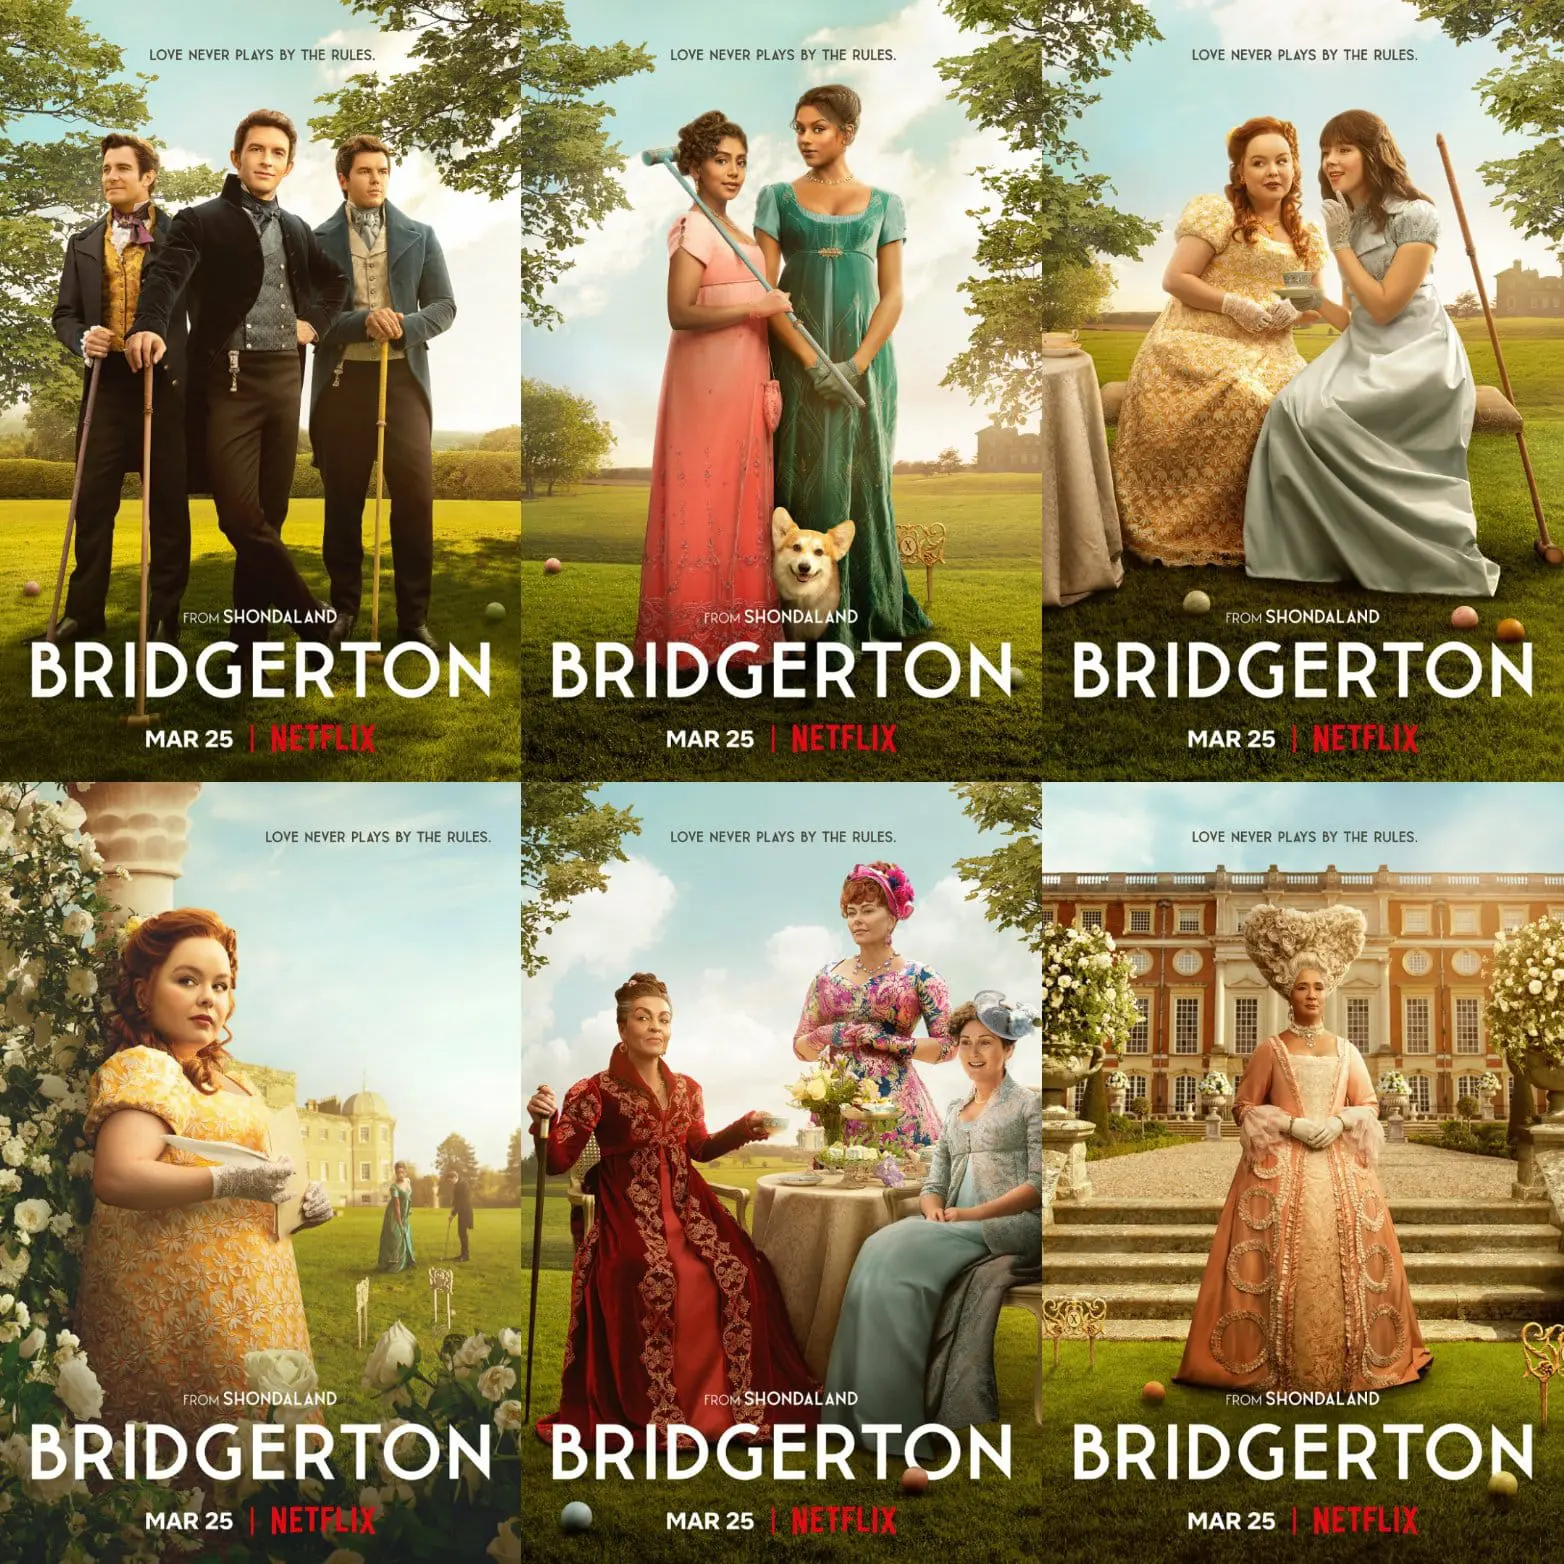 Los Bridgerton Temporada 2. Sinopsis y fotos promocionales WhatsApp-Image-2022-03-03-at-01.47.24.jpeg